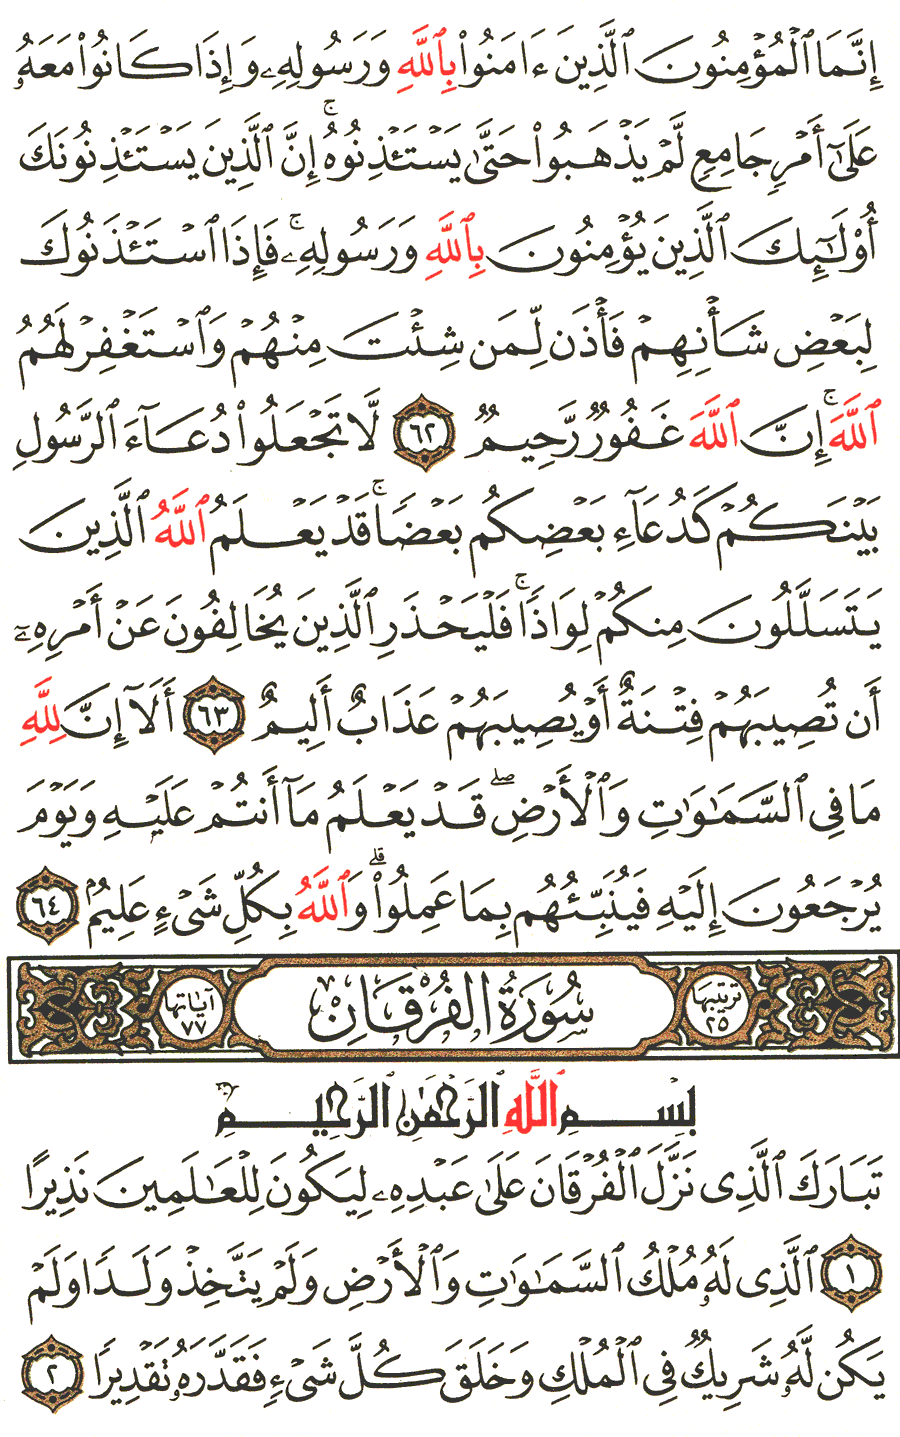 الصفحة رقم 359  من القرآن الكريم مكتوبة من المصحف